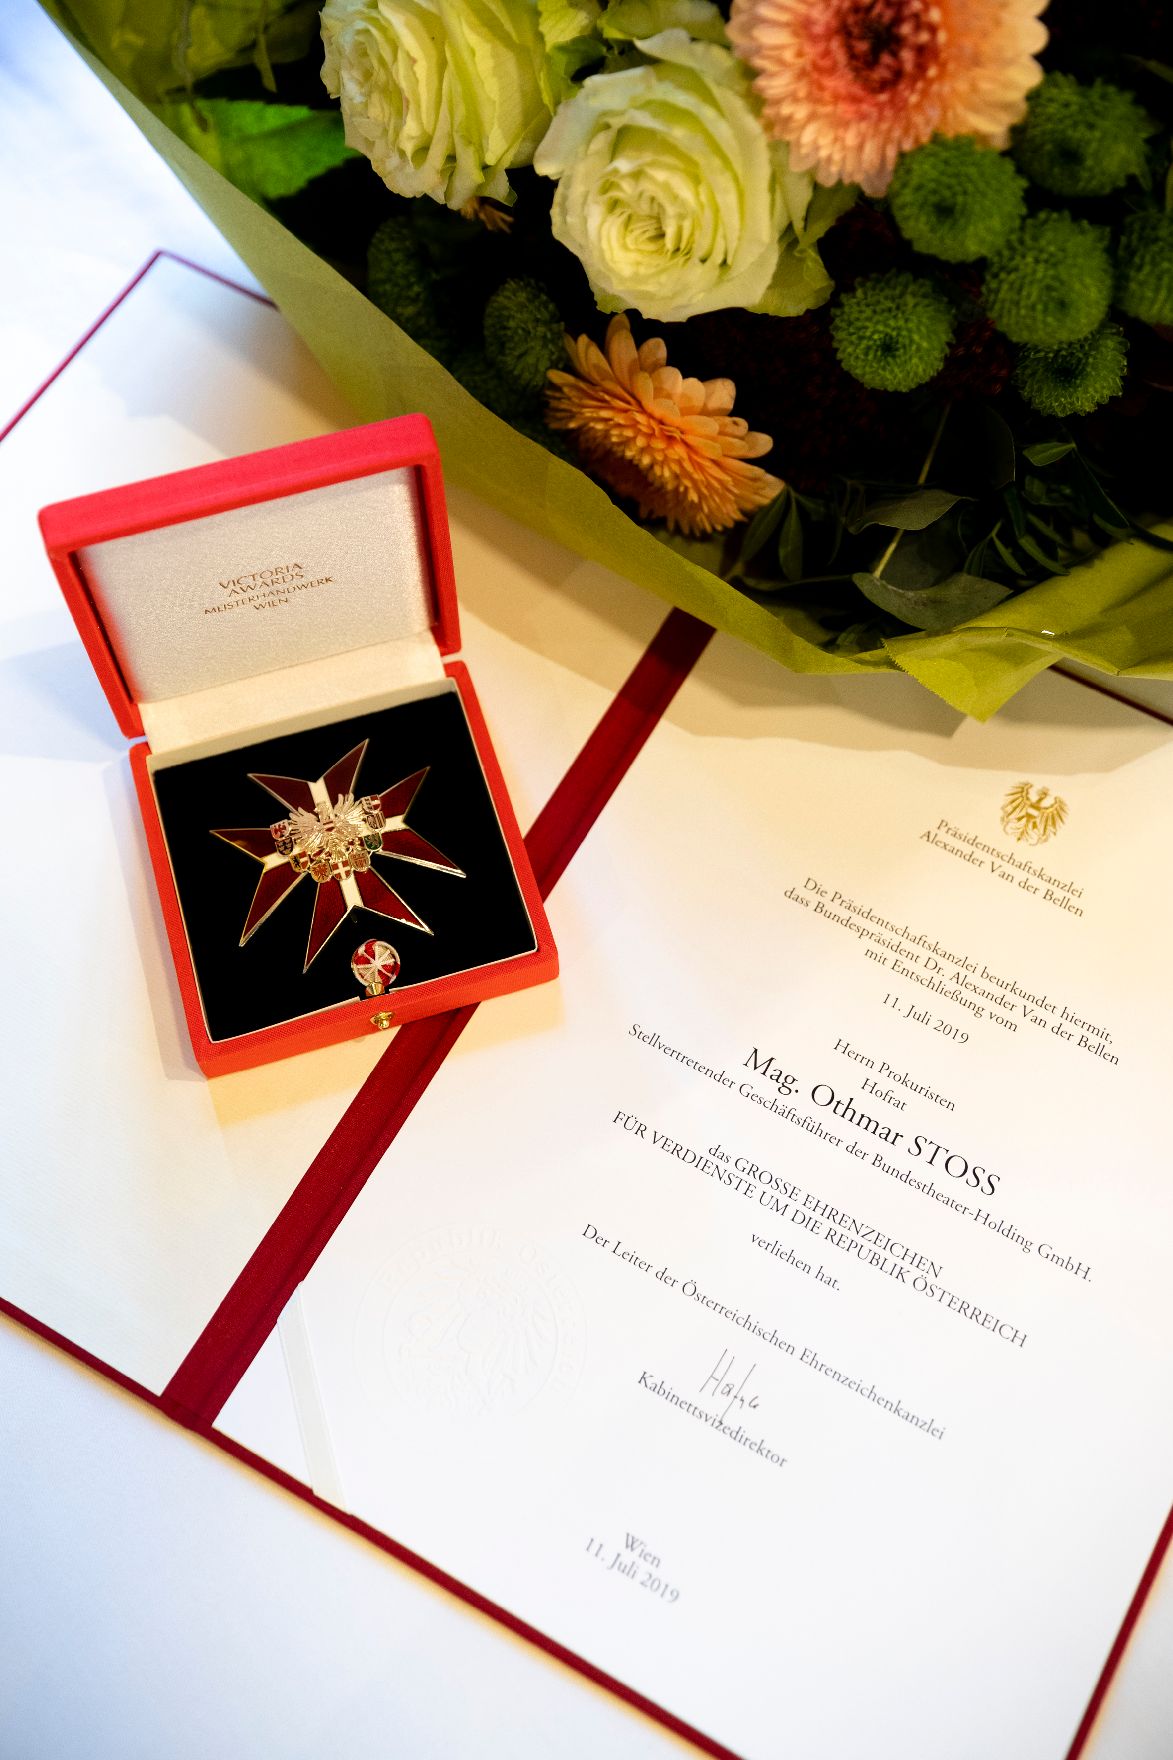 Am 25. Oktober 2019 überreichte Sektionschef Jürgen Meindl das Goldene Ehrenzeichen für Verdienste um die Republik Österreich an Othmar Stoss.